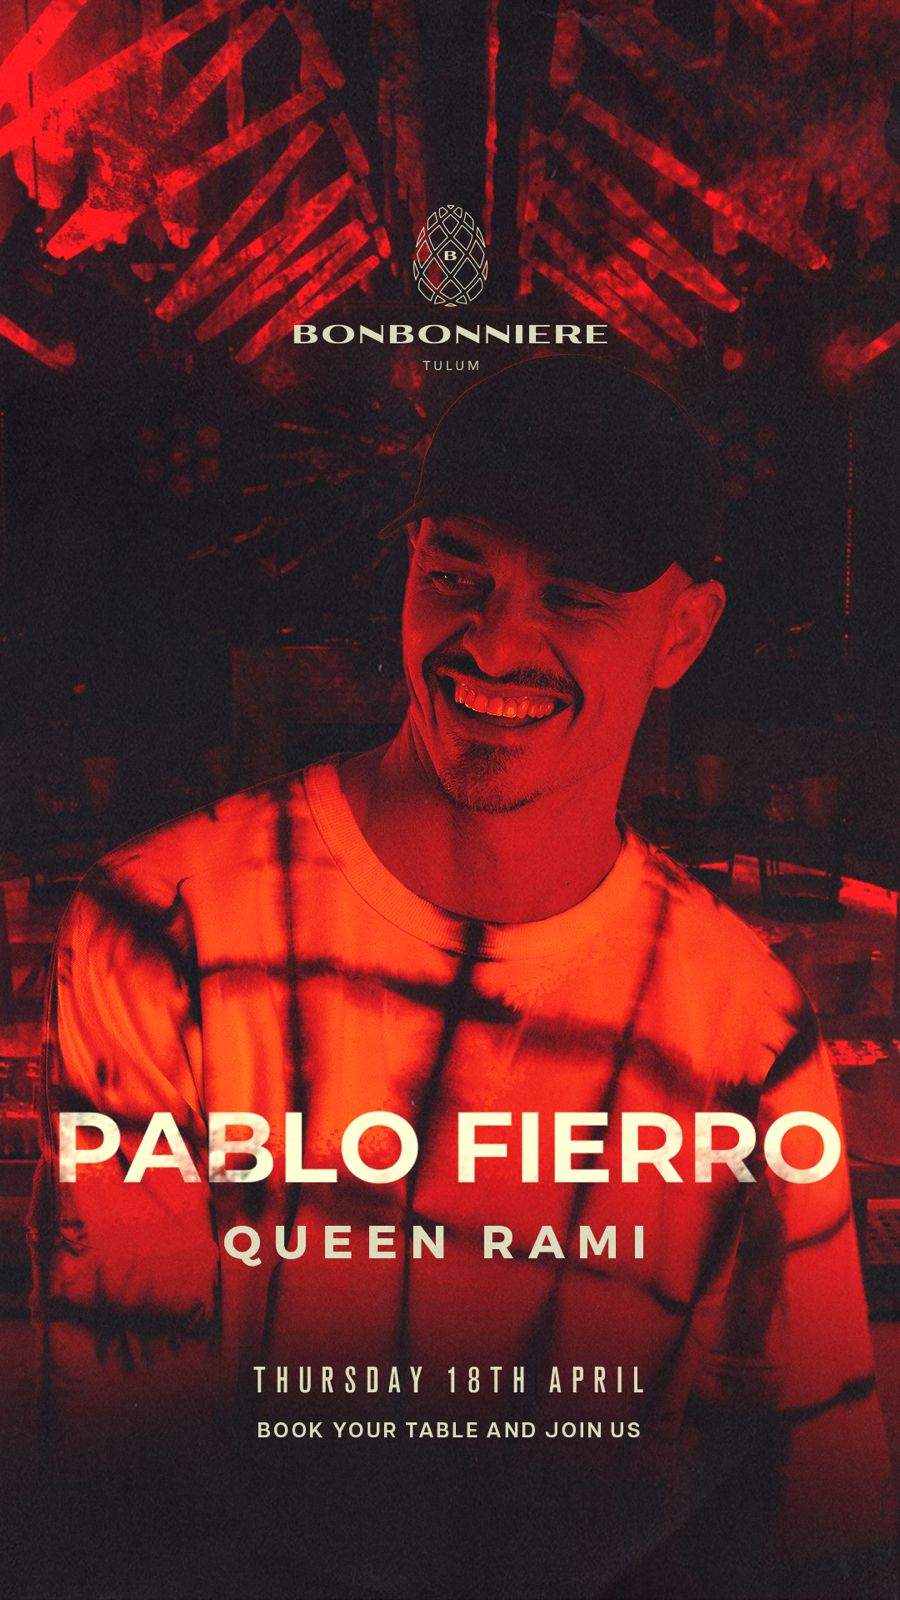 Pablo Fierro by BONBONNIERE - フライヤー表